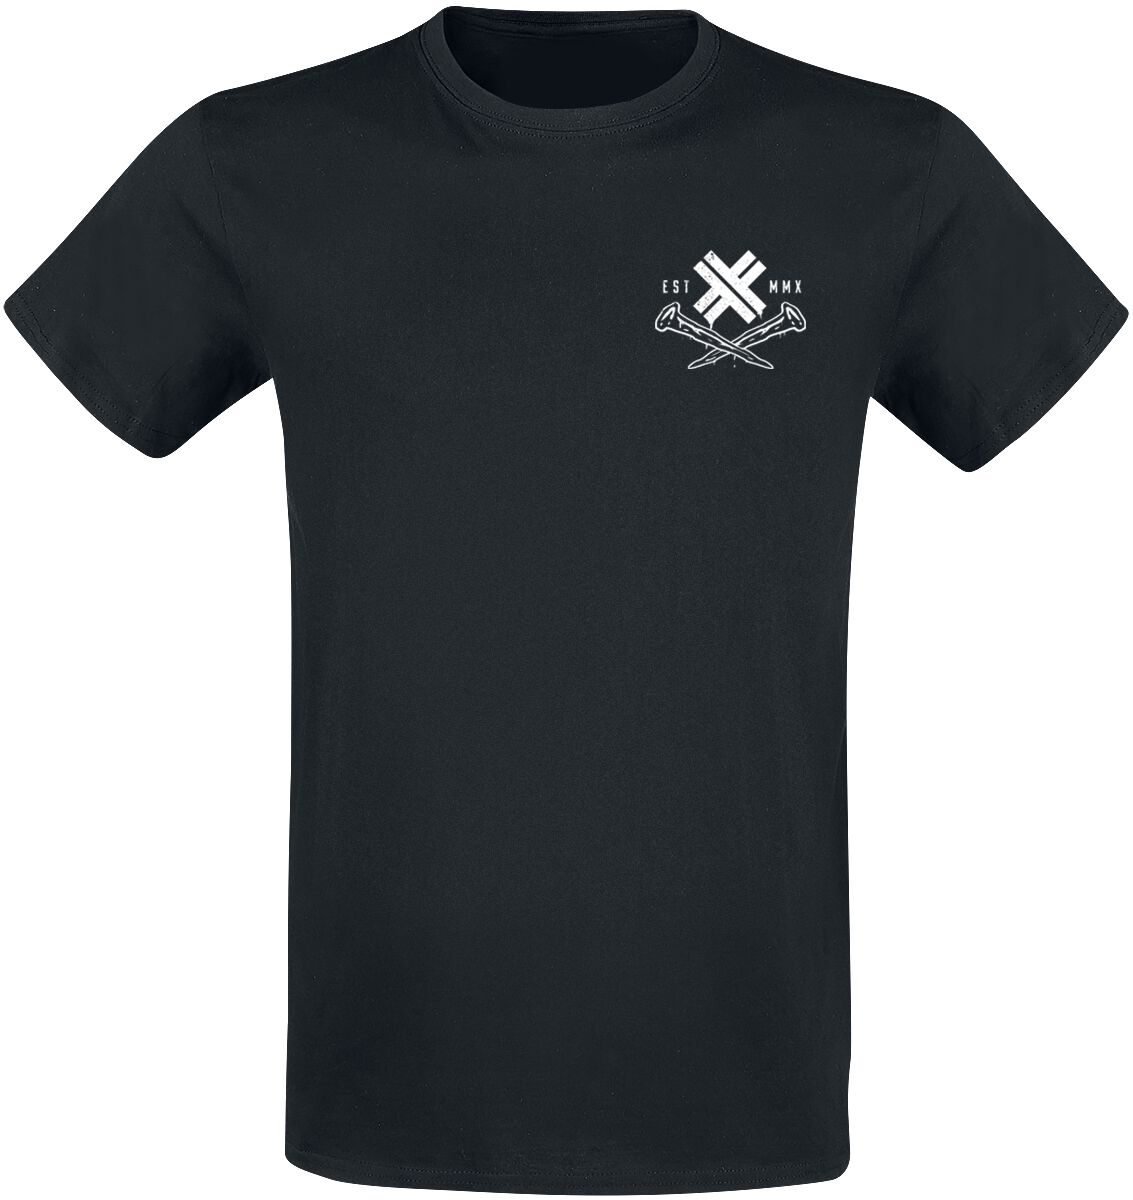 Electric Callboy T-Shirt - Dark Horse - S bis 3XL - für Männer - Größe L - schwarz  - Lizenziertes Merchandise!